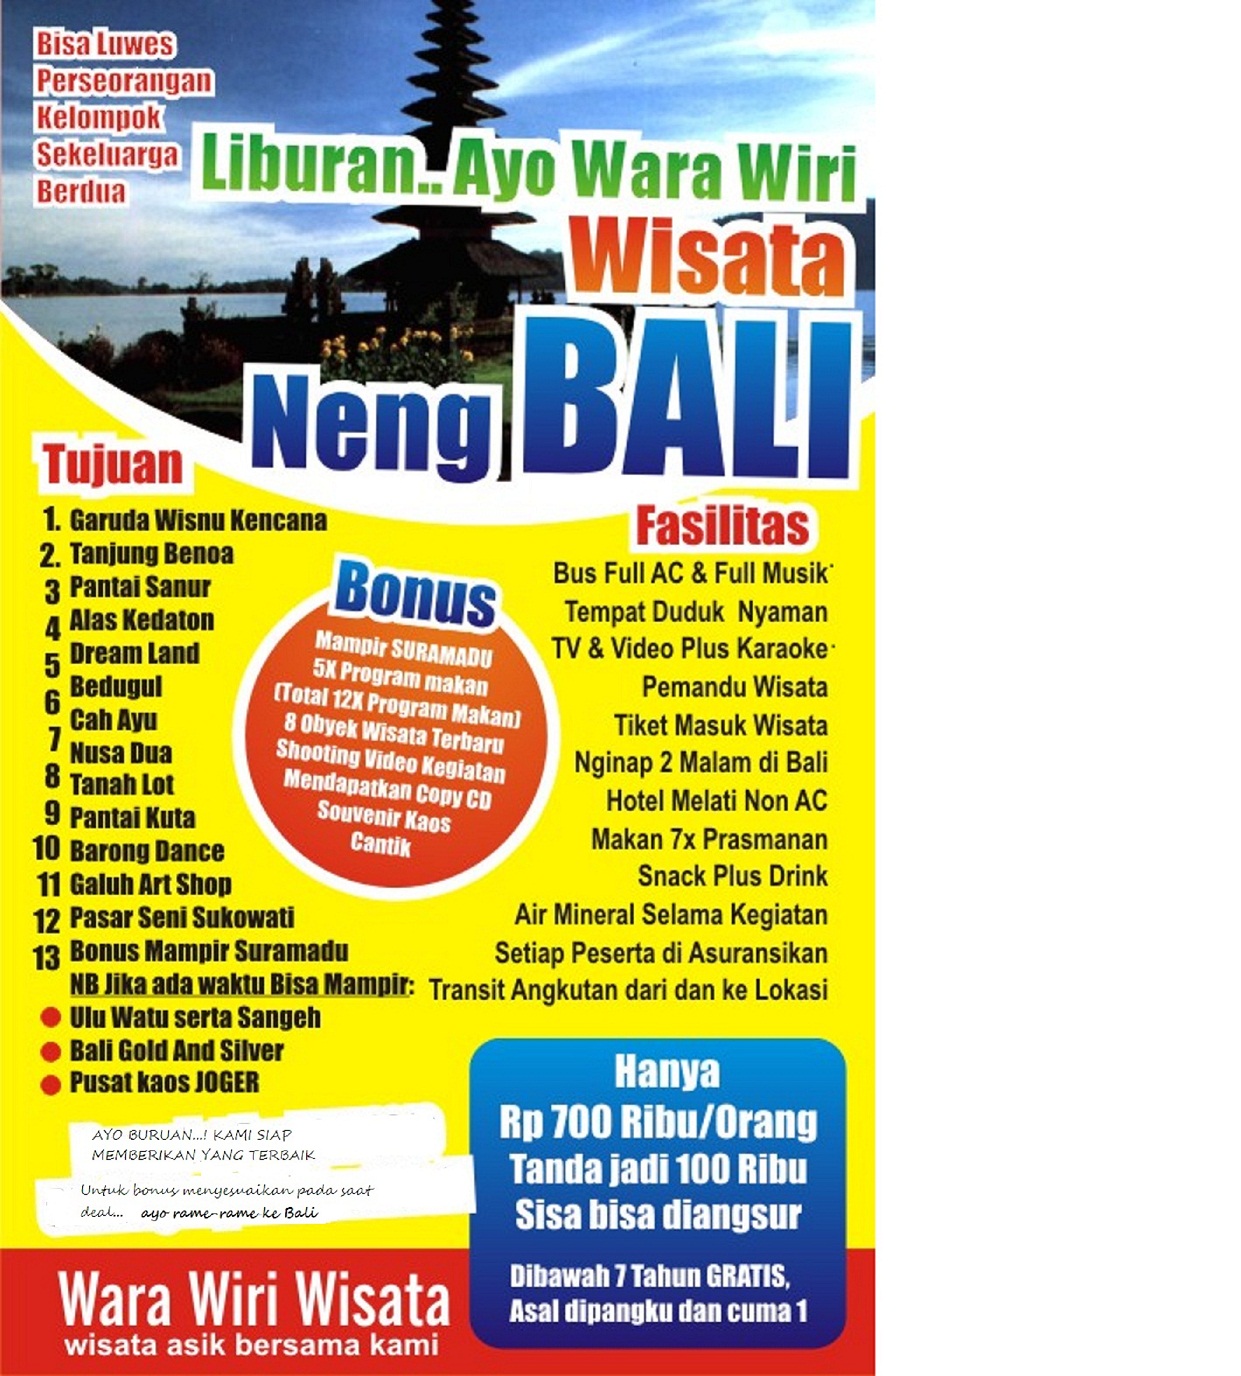 Jasa Pengiriman Murah Ke Bali